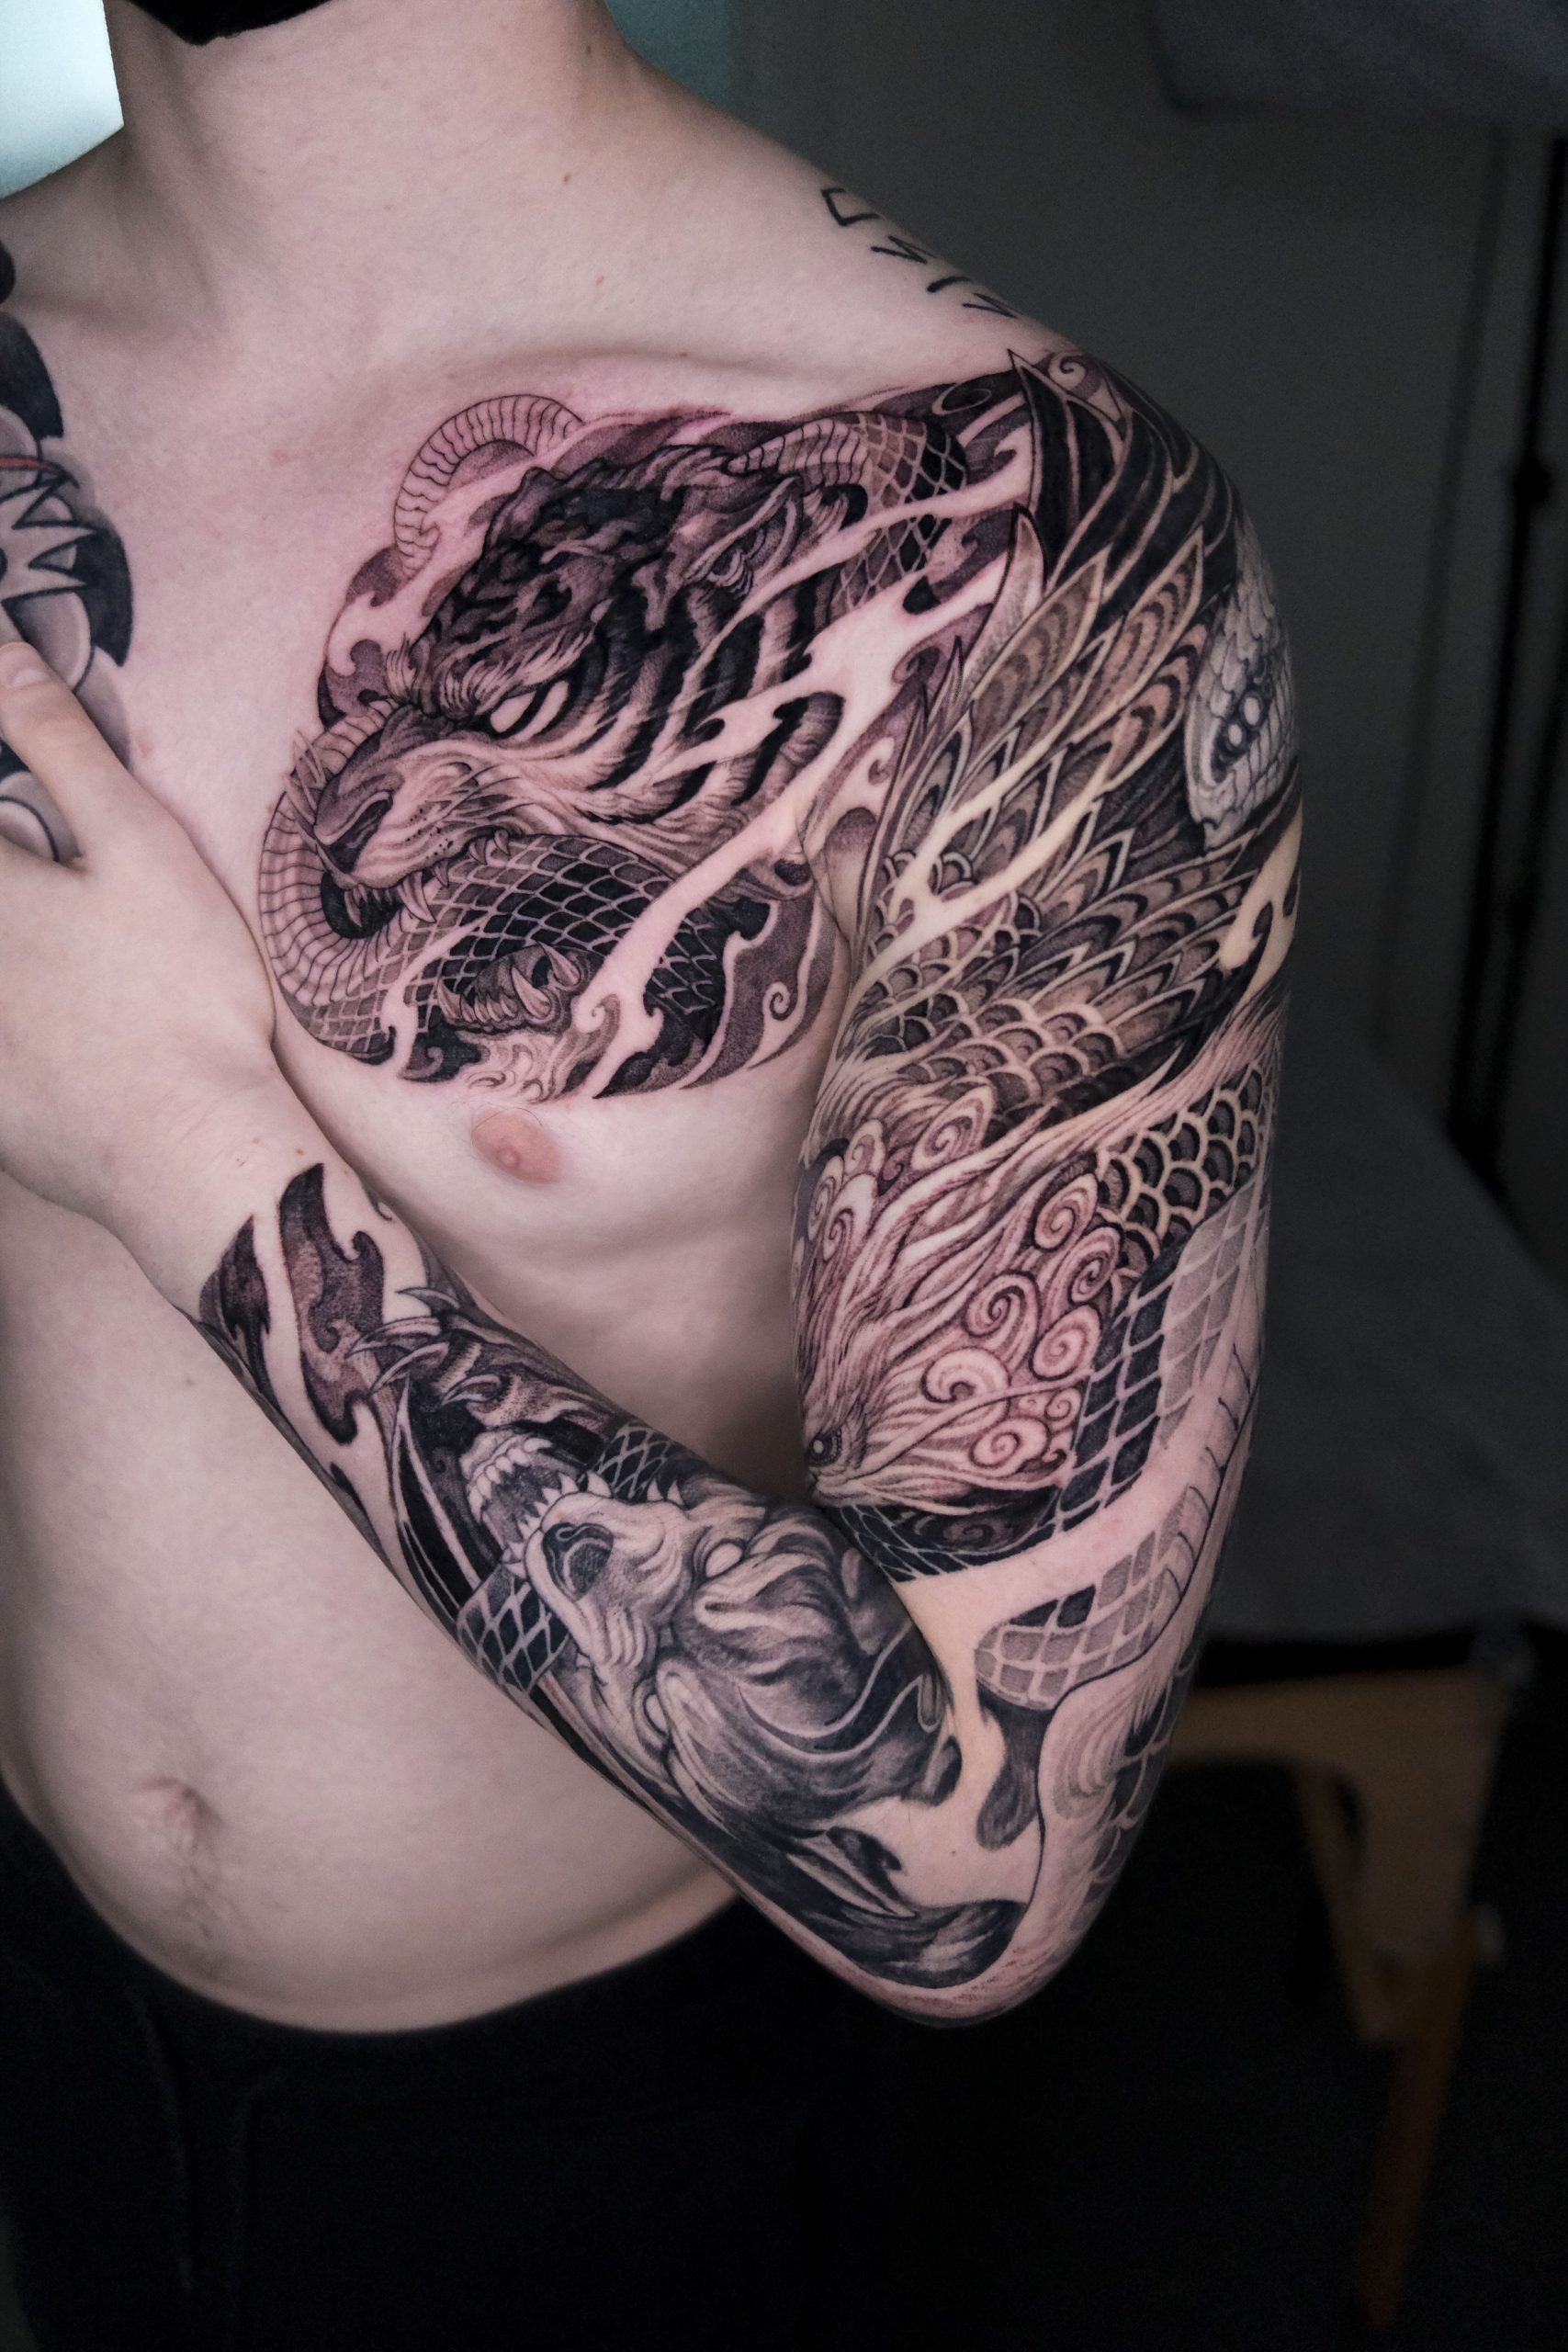 Tattoo artist - Wikipedia